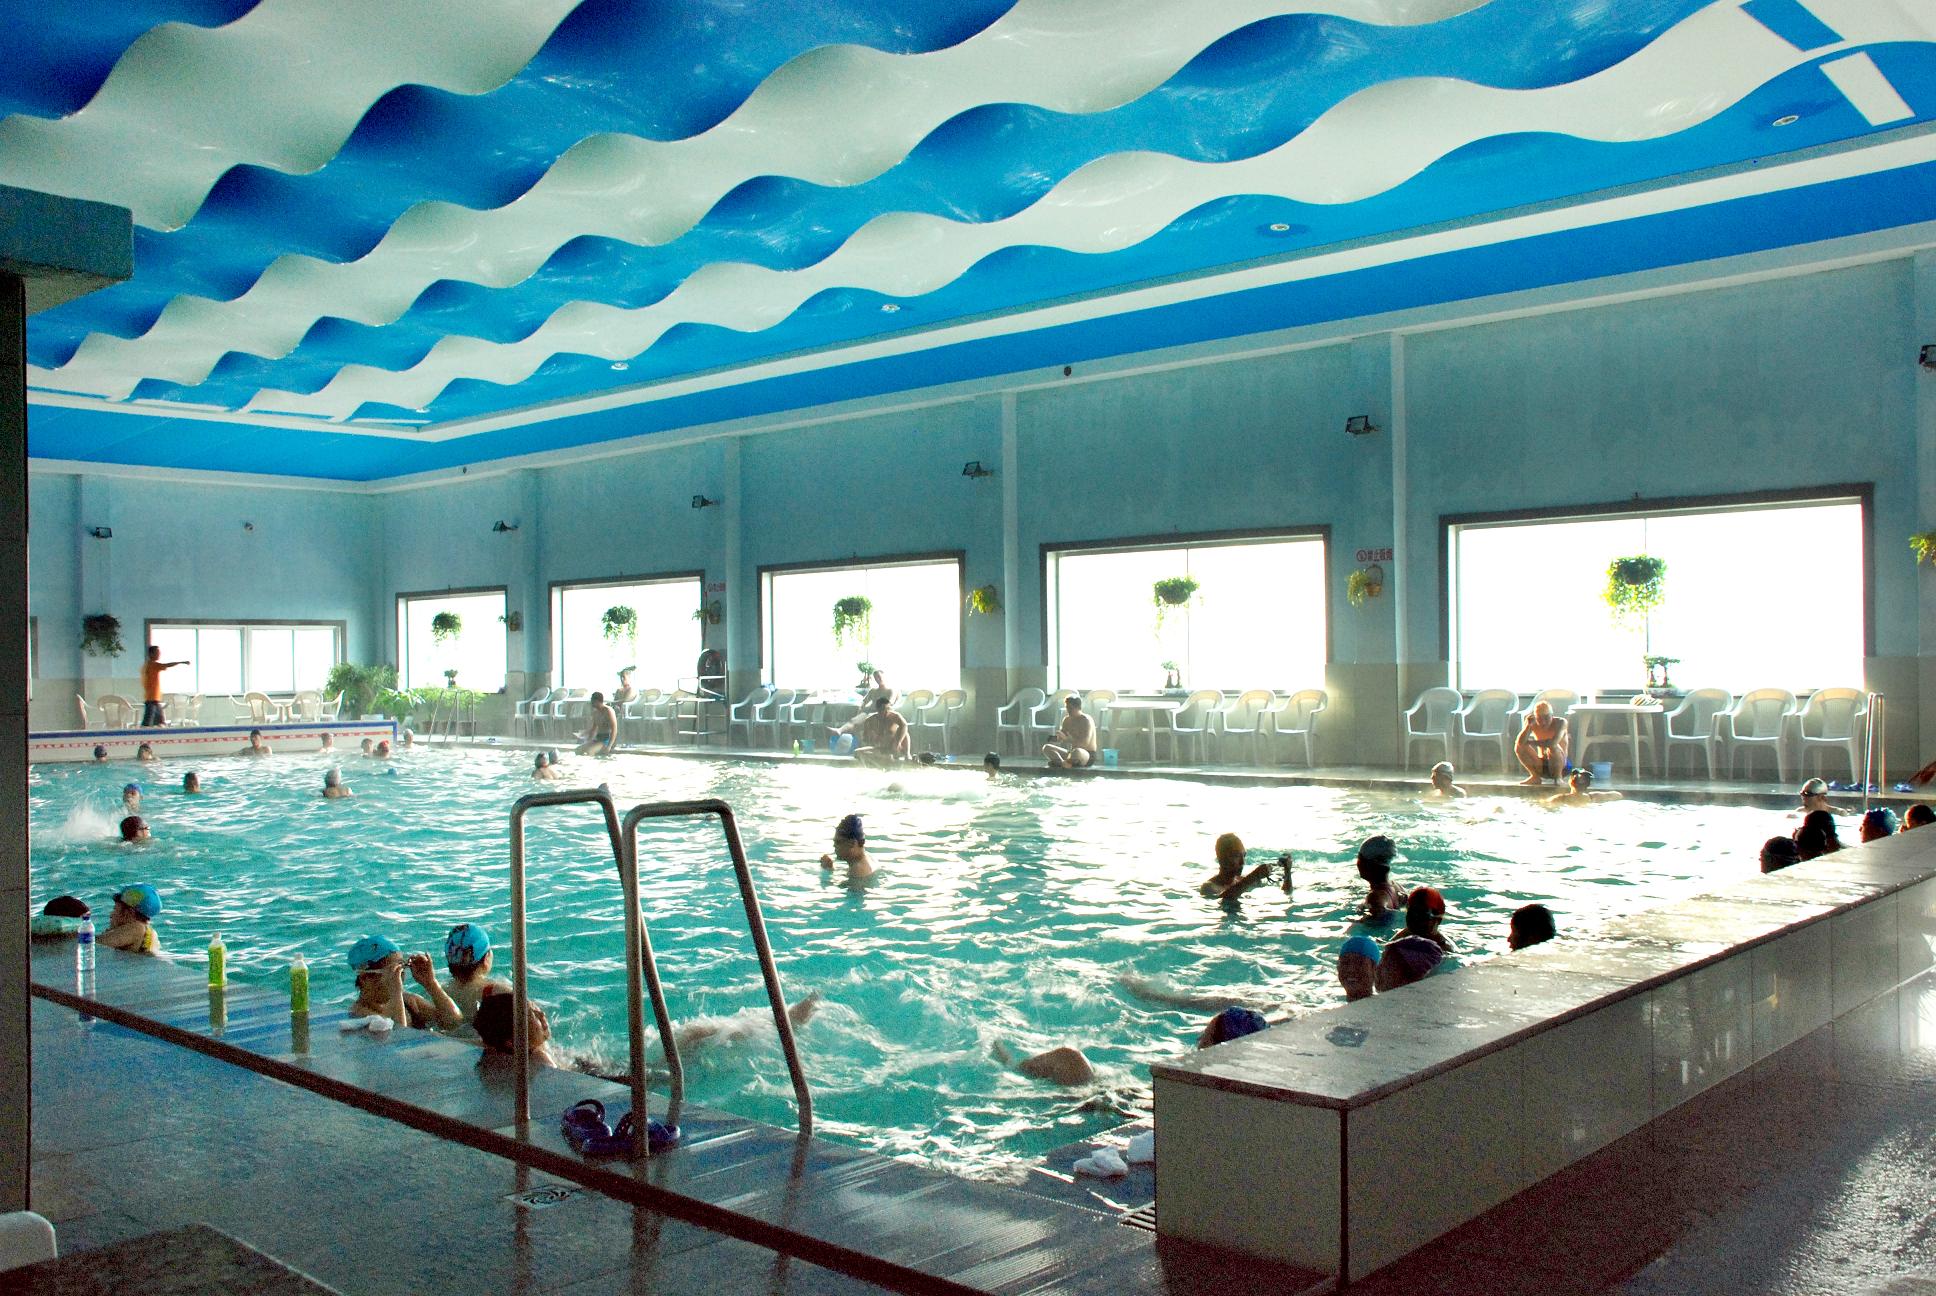 室内温泉游泳池天天换薪水，水温适宜，水质优良，利于健康。